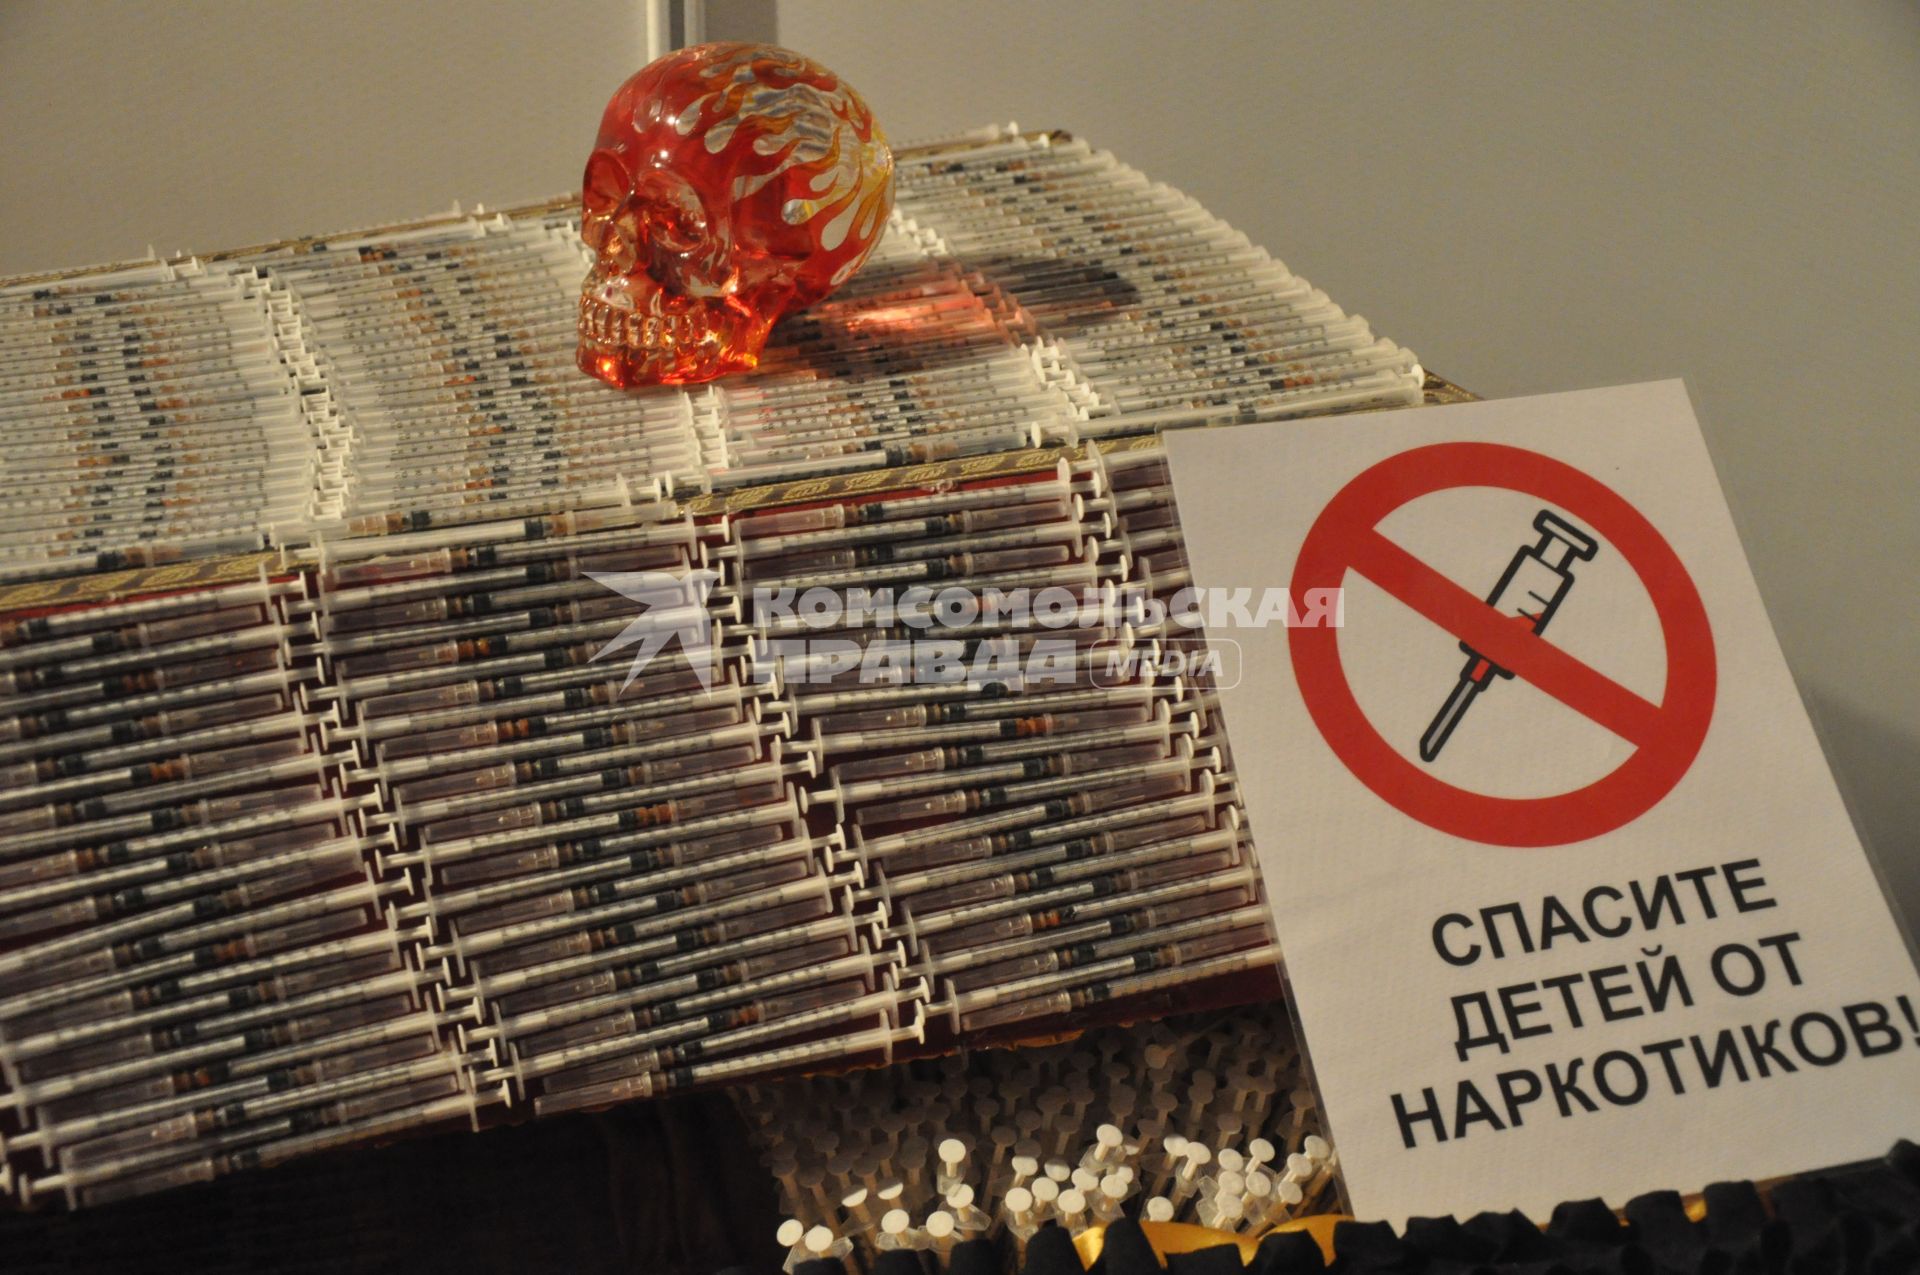 Антинаркотическая акция `Выбери жизнь` в Новосибирске. На снимке: Медицинские шприцы с табличкой `Спасите детей от наркотиков`.